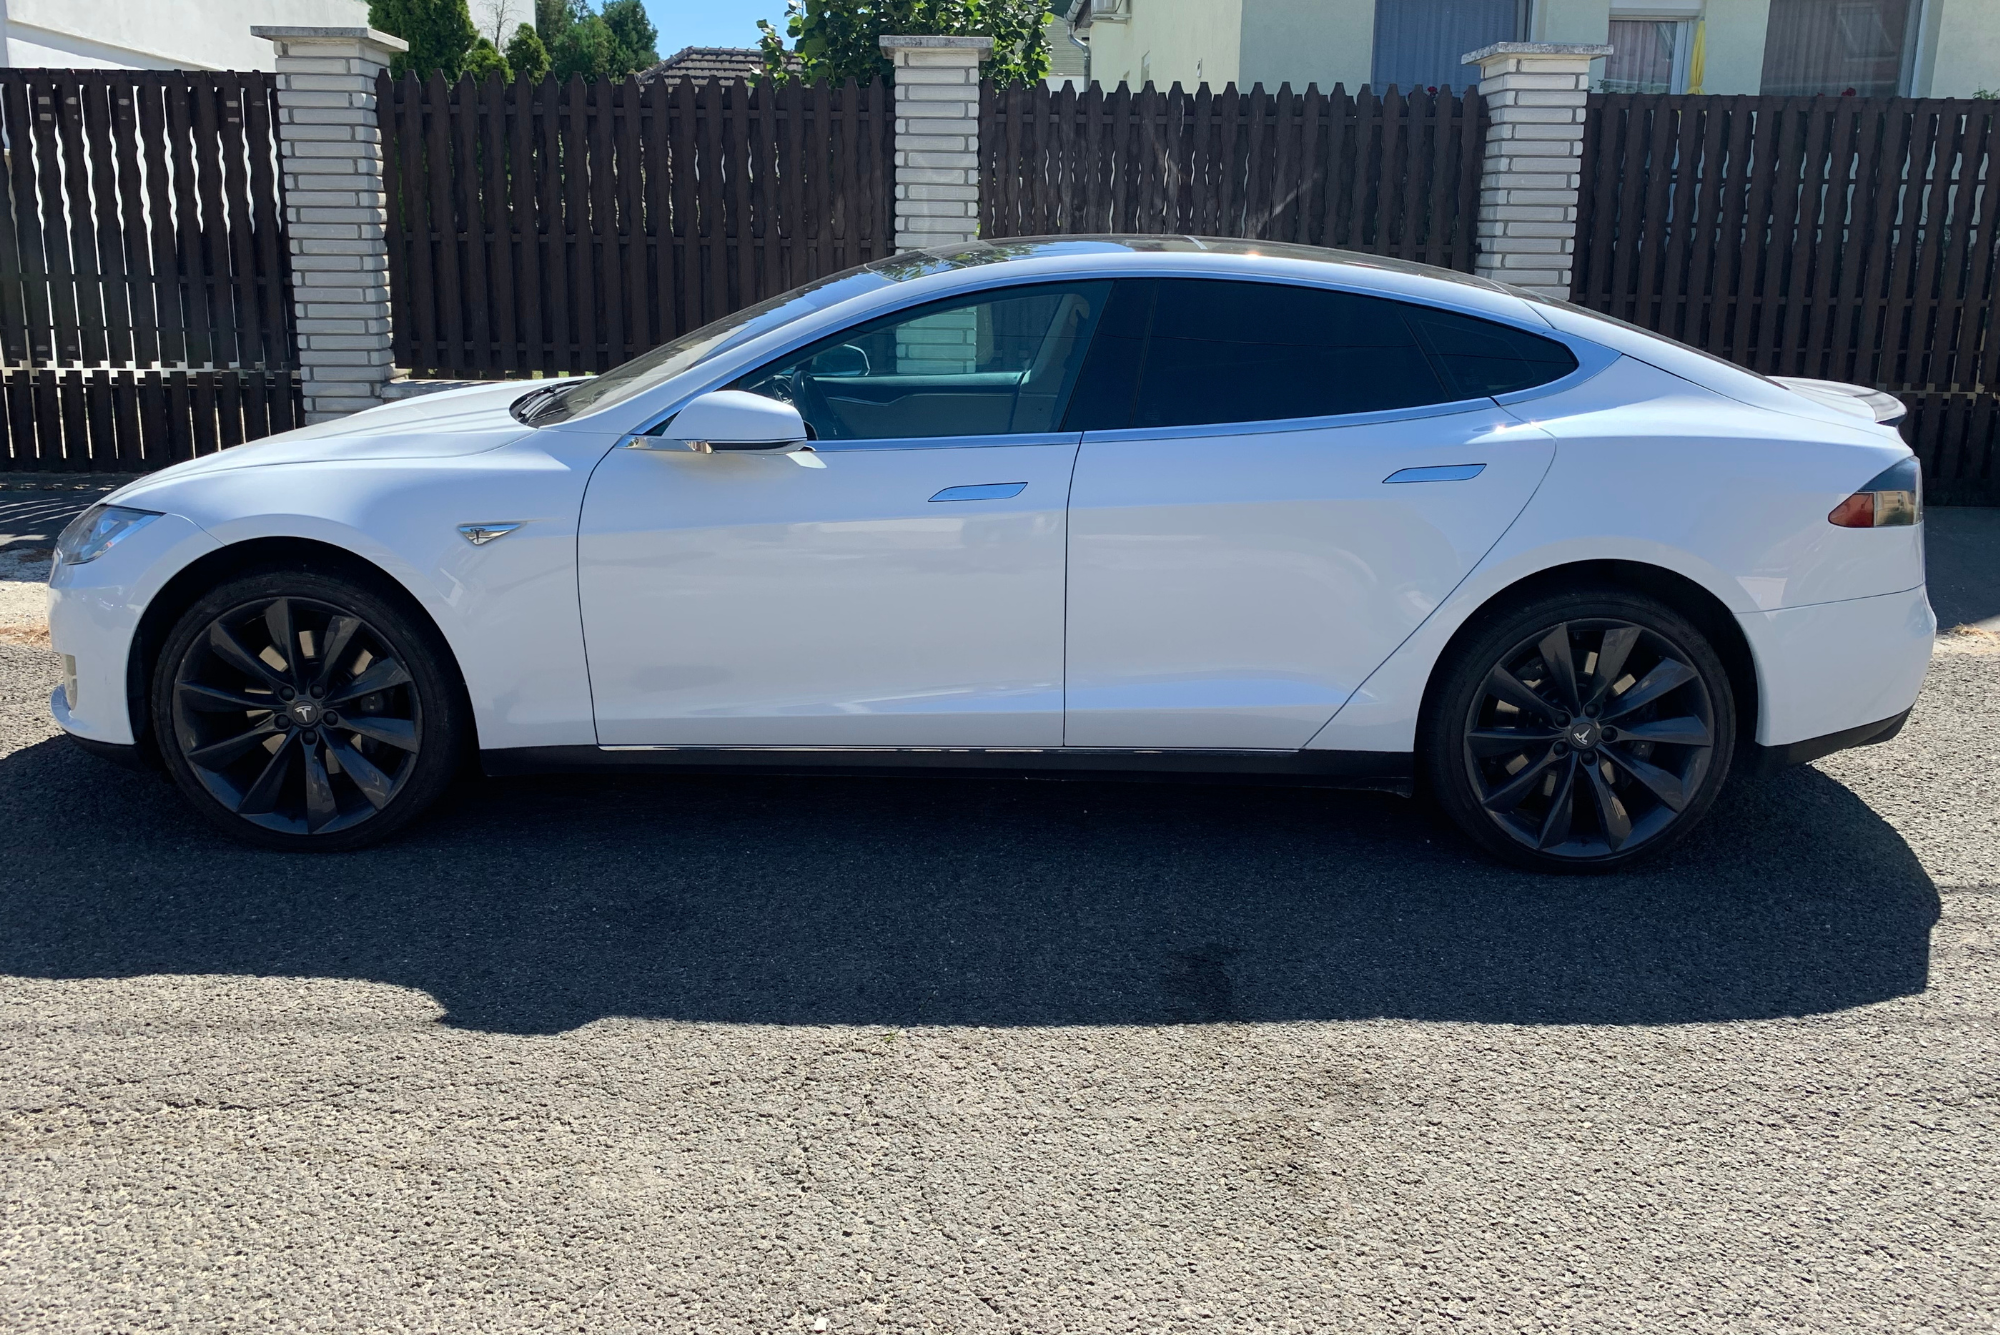 Tesla Model S P85+ Bérelhető Rental car bullrent autóbérlés